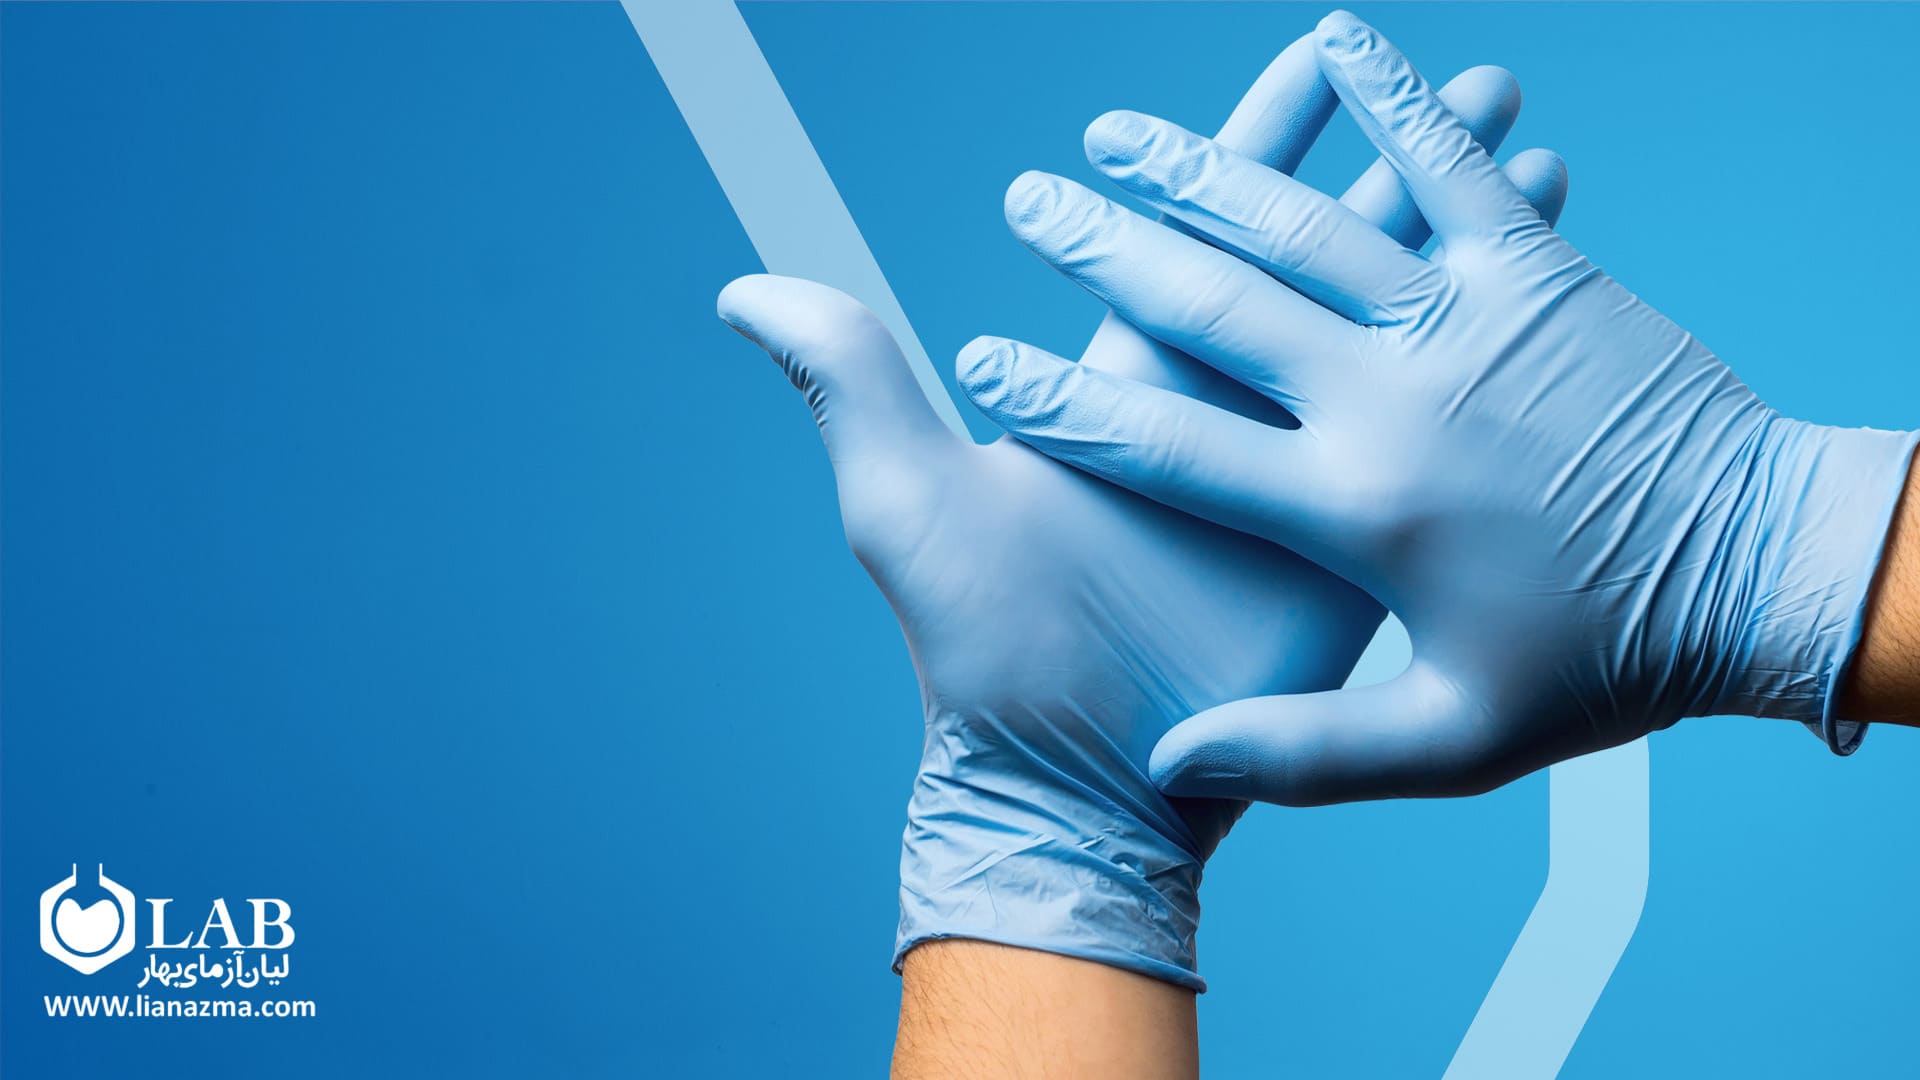 ویژگی های مهم در انتخاب دستکش پزشکی 